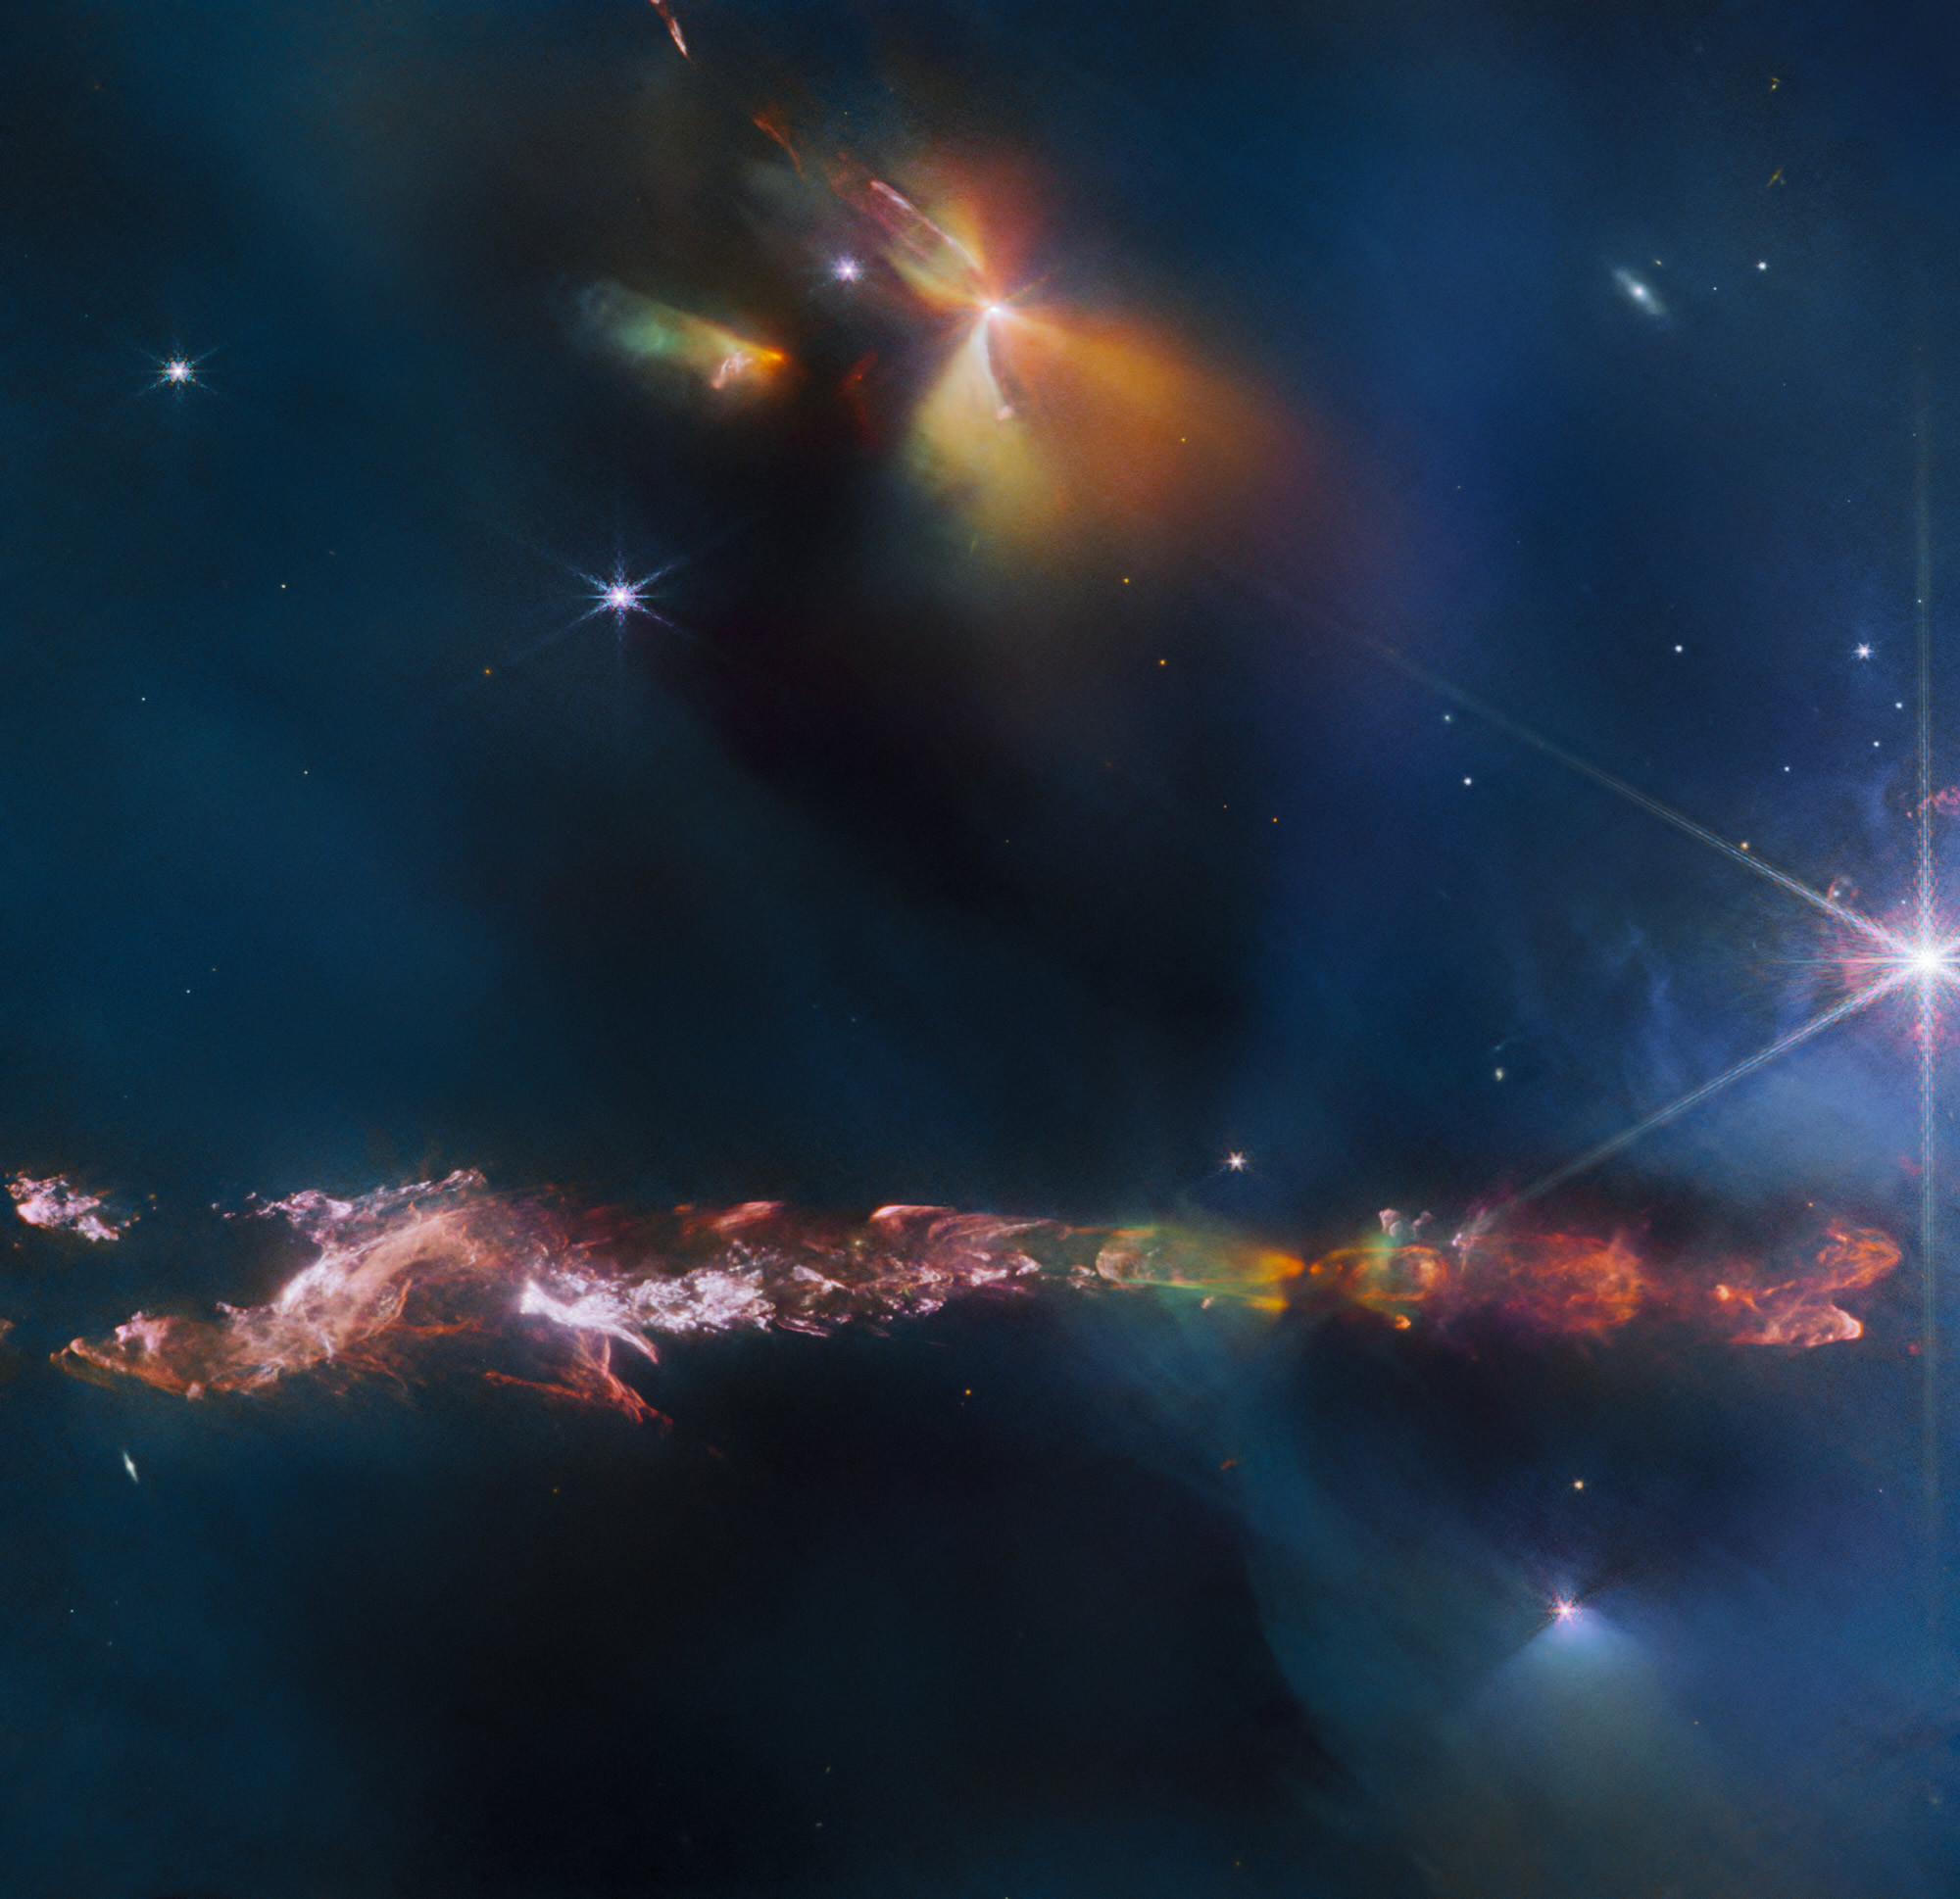 詹姆斯·韦伯太空望远镜在其宇宙摇篮中发现了一颗新生恒星